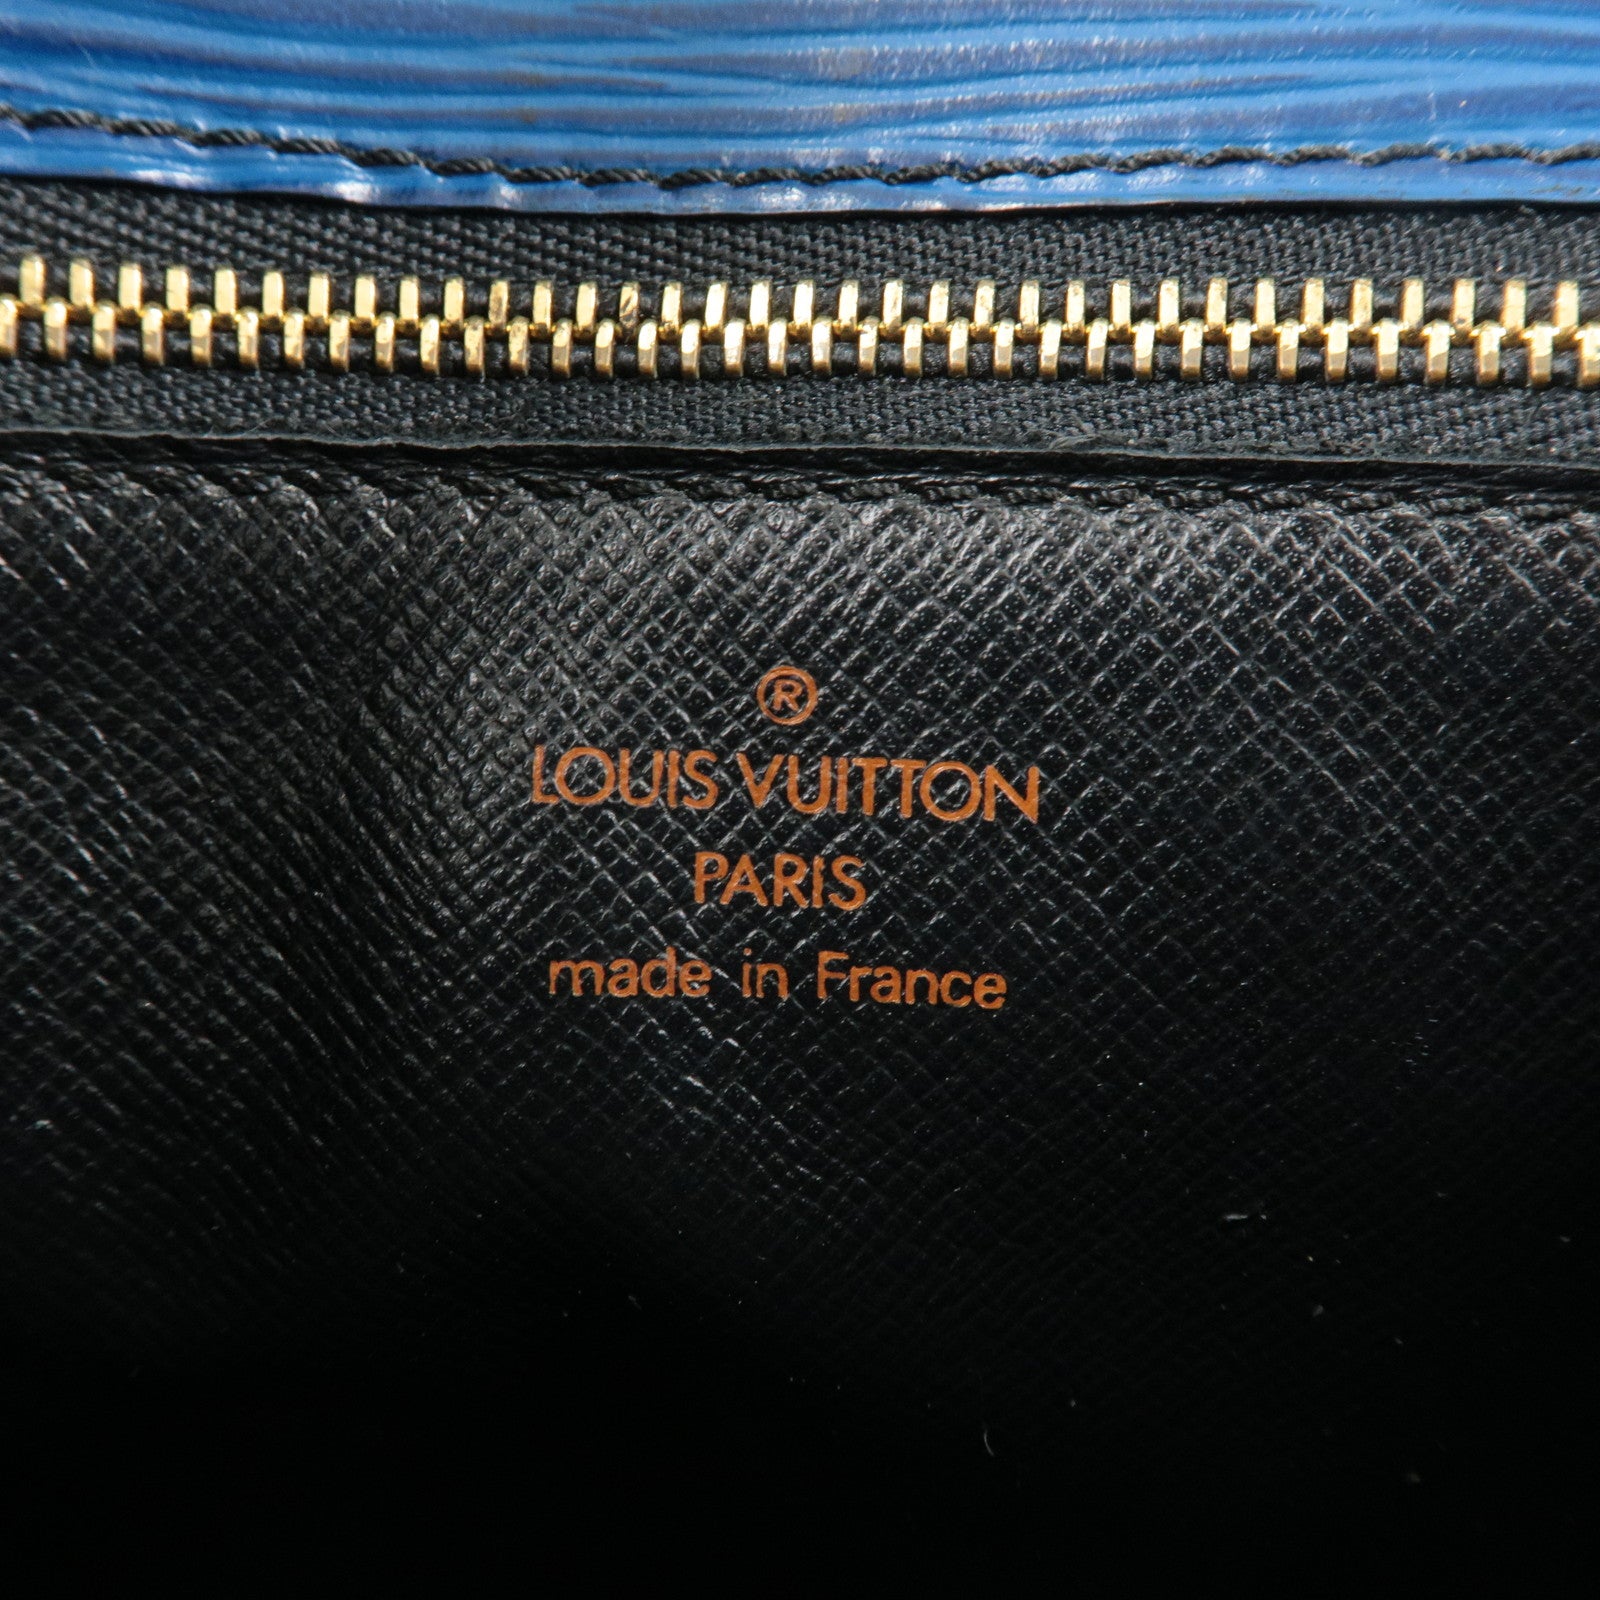 Louis Vuitton Neo Saint Cloud Bag